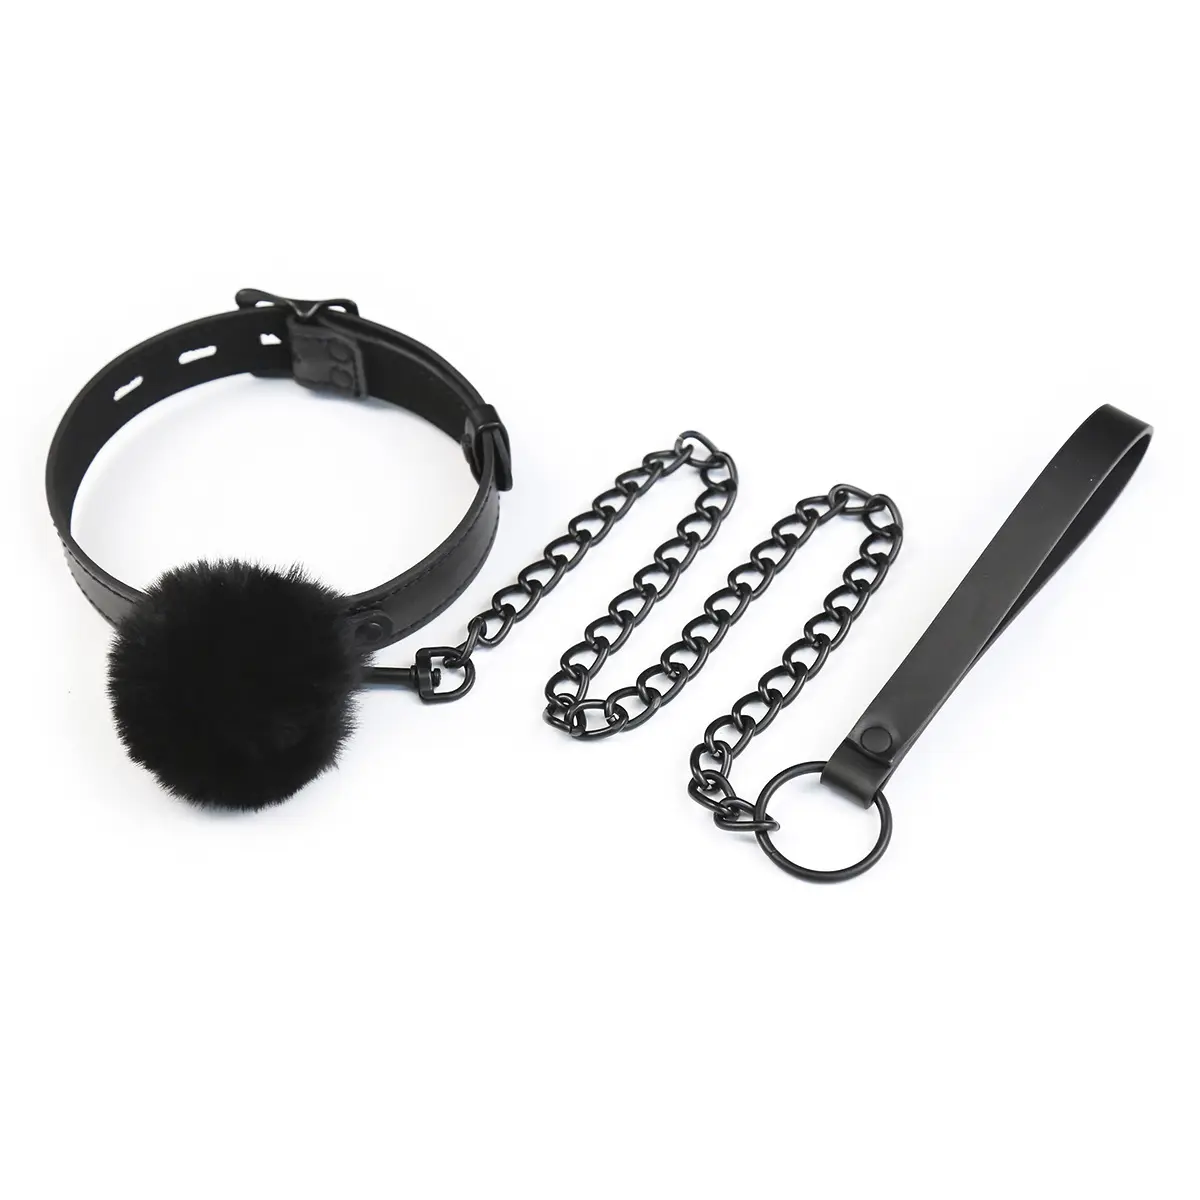 BDSM negro Collar de encaje puños de tobillo con correa cadenas ajustable collares para par esclavo Collar sexo juguete